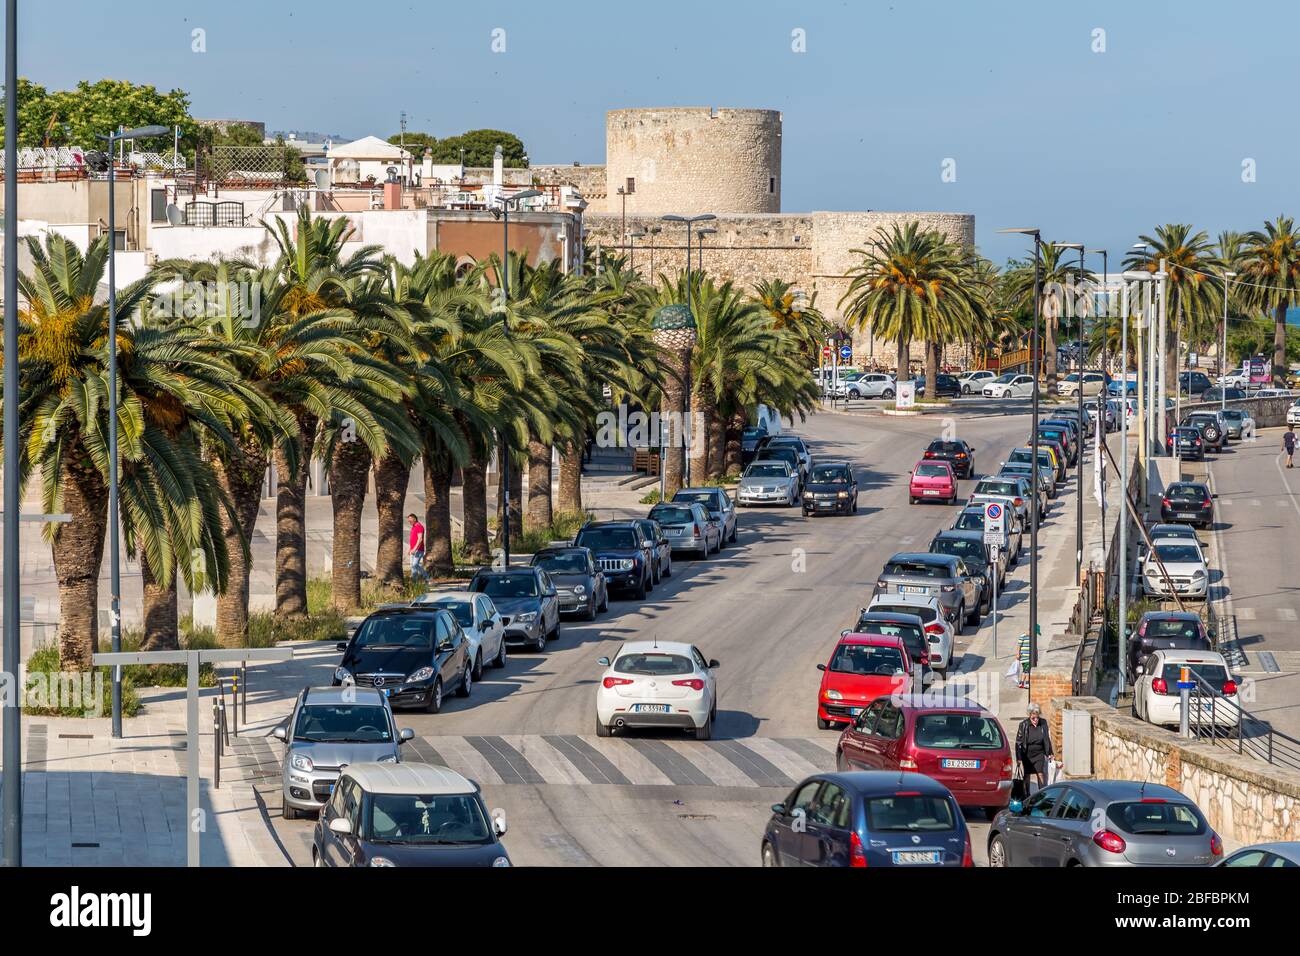 Manfredonia, eine mediterrane Hafenstadt in der Region Apulien. Gargano Halbinsel, Teil seines Landes ist Gargano Nationalpark Stockfoto